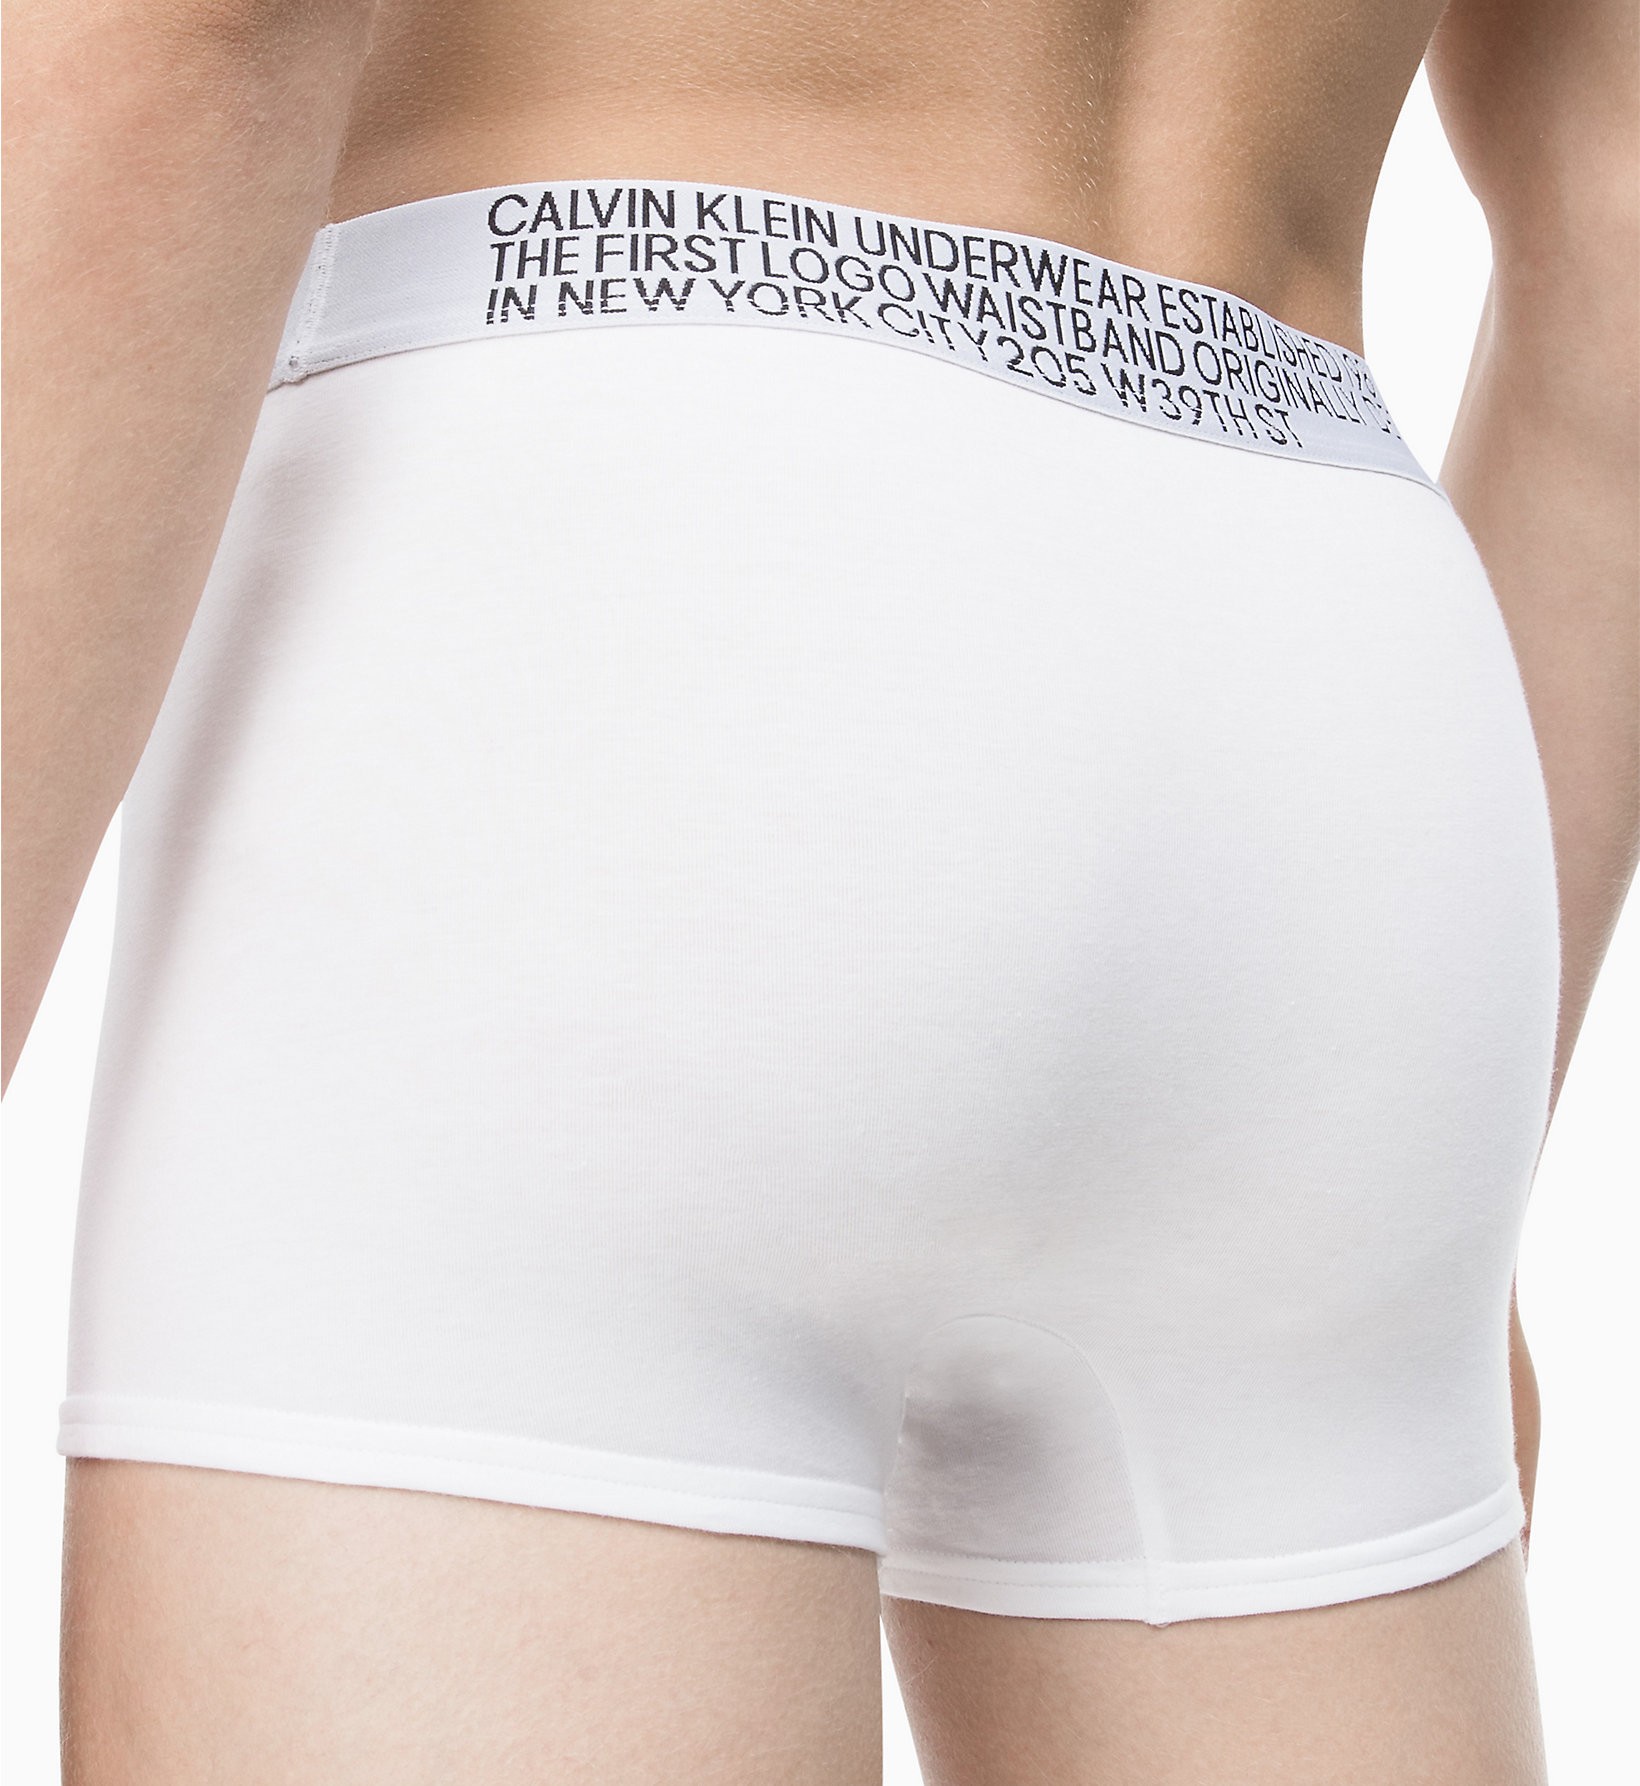 Calvin Klein Boxer aderenti - Statement 1981 NB1703A 100 White - Nuova Collezione Primavera Estate 2019